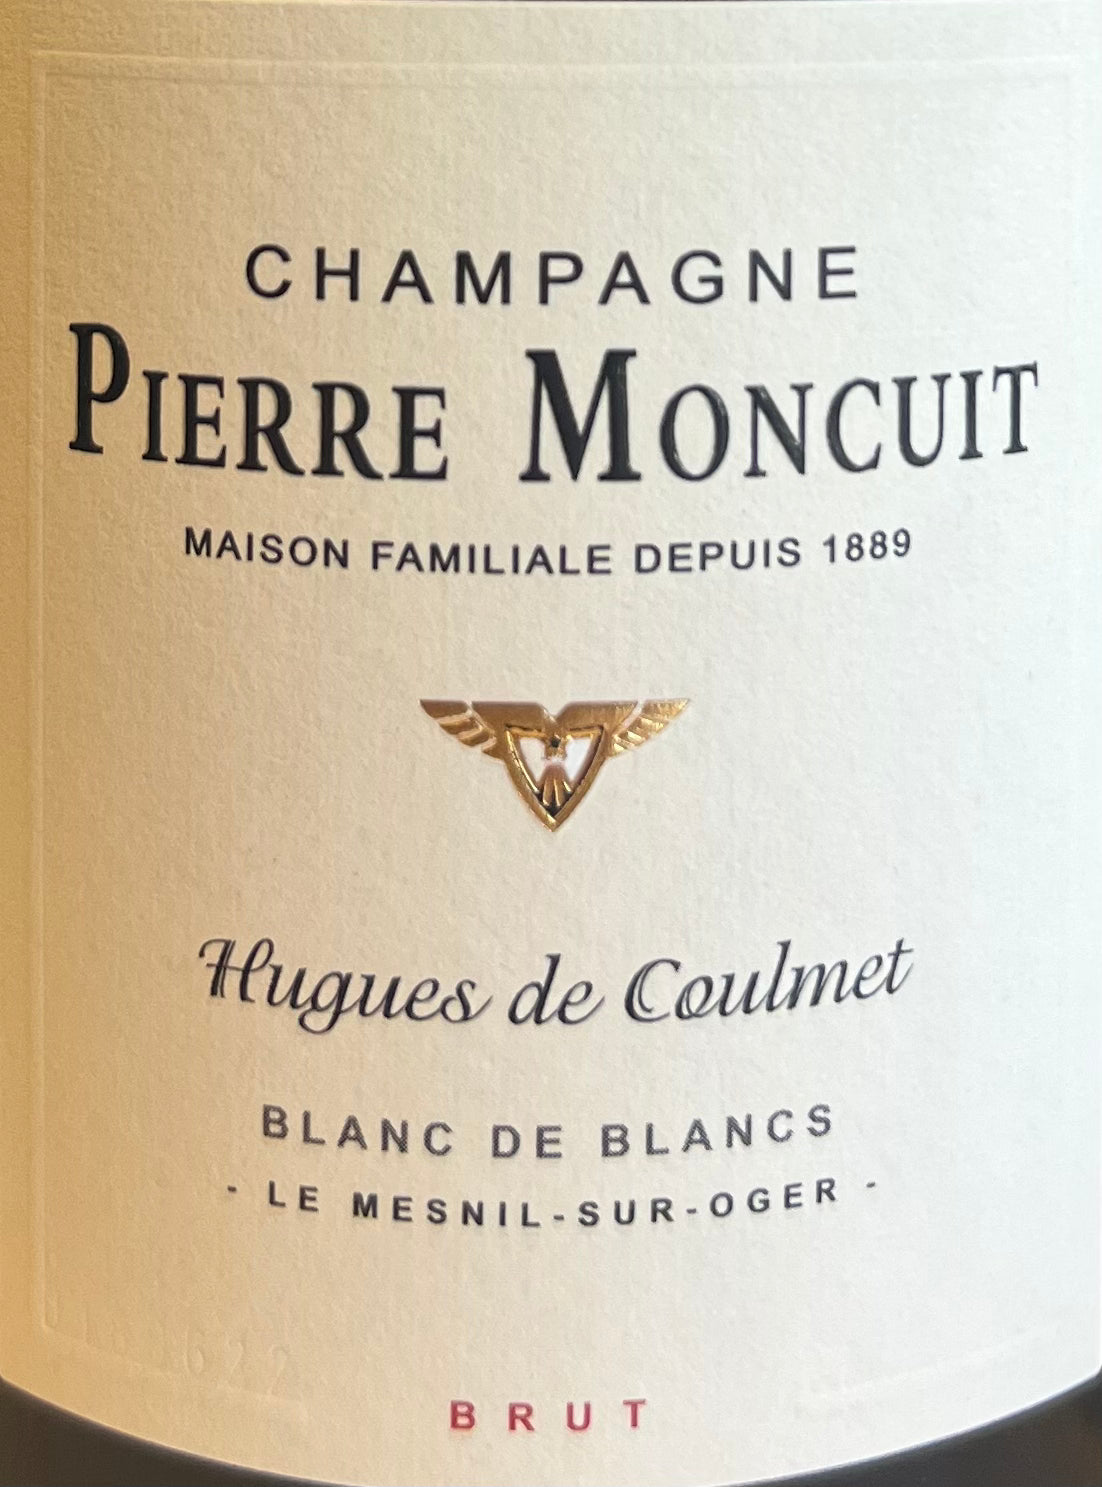 Pierre Moncuit 'Hugues de Coulmet' Blanc de Blancs - Champagne